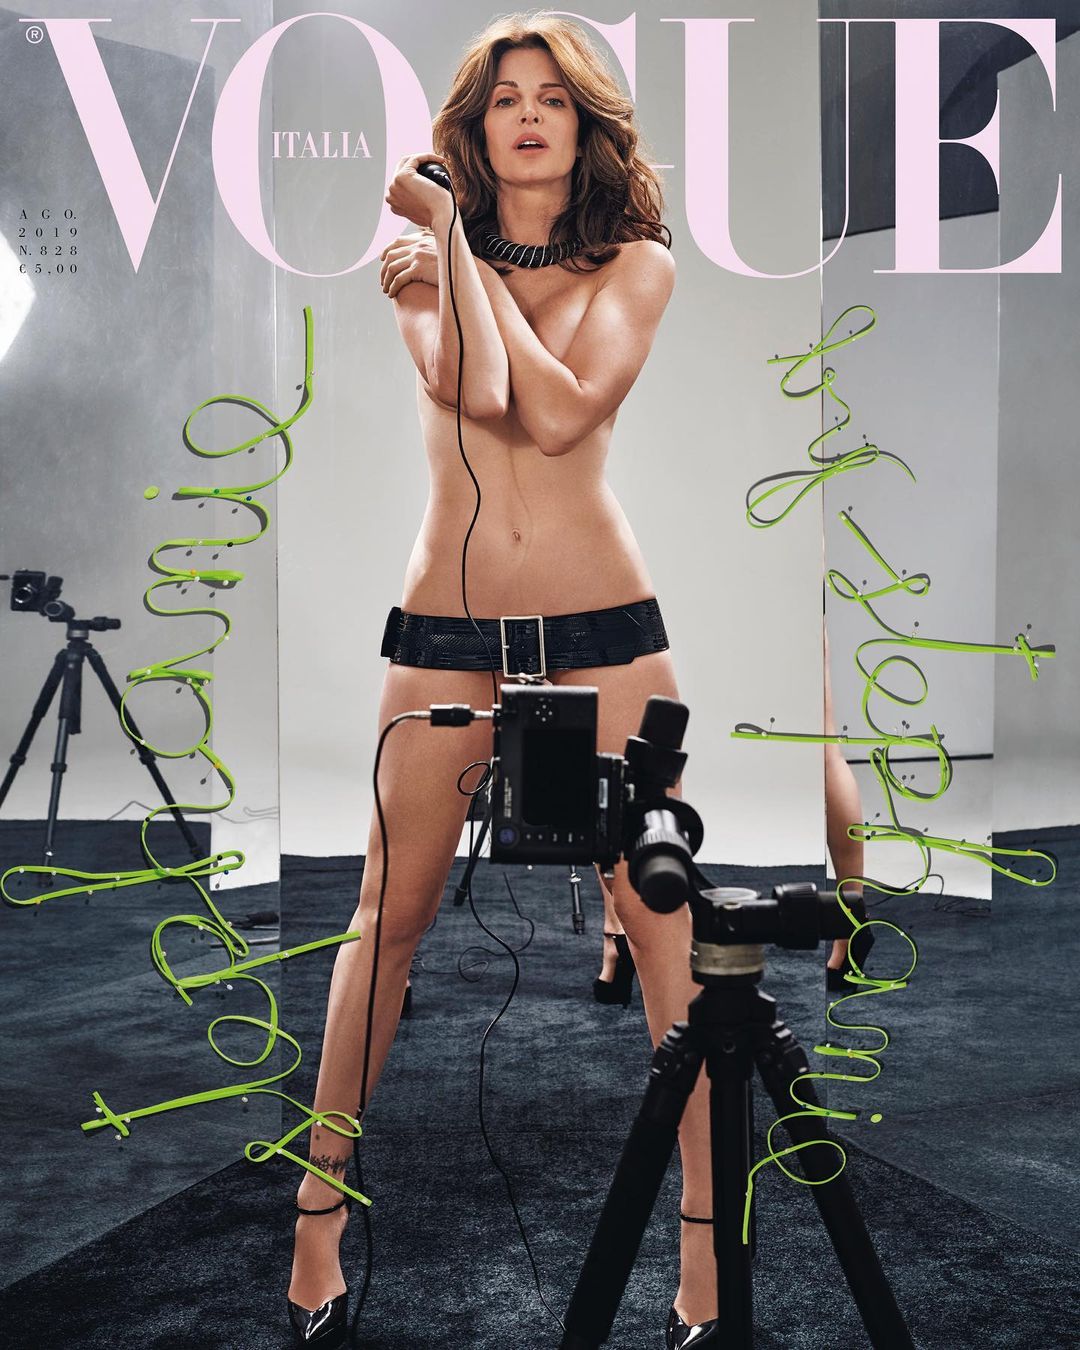 Stephanie Seymour là siêu mẫu nổi tiếng, tuổi ngũ tuần vẫn tự tin nude trên bìa tạp chí.